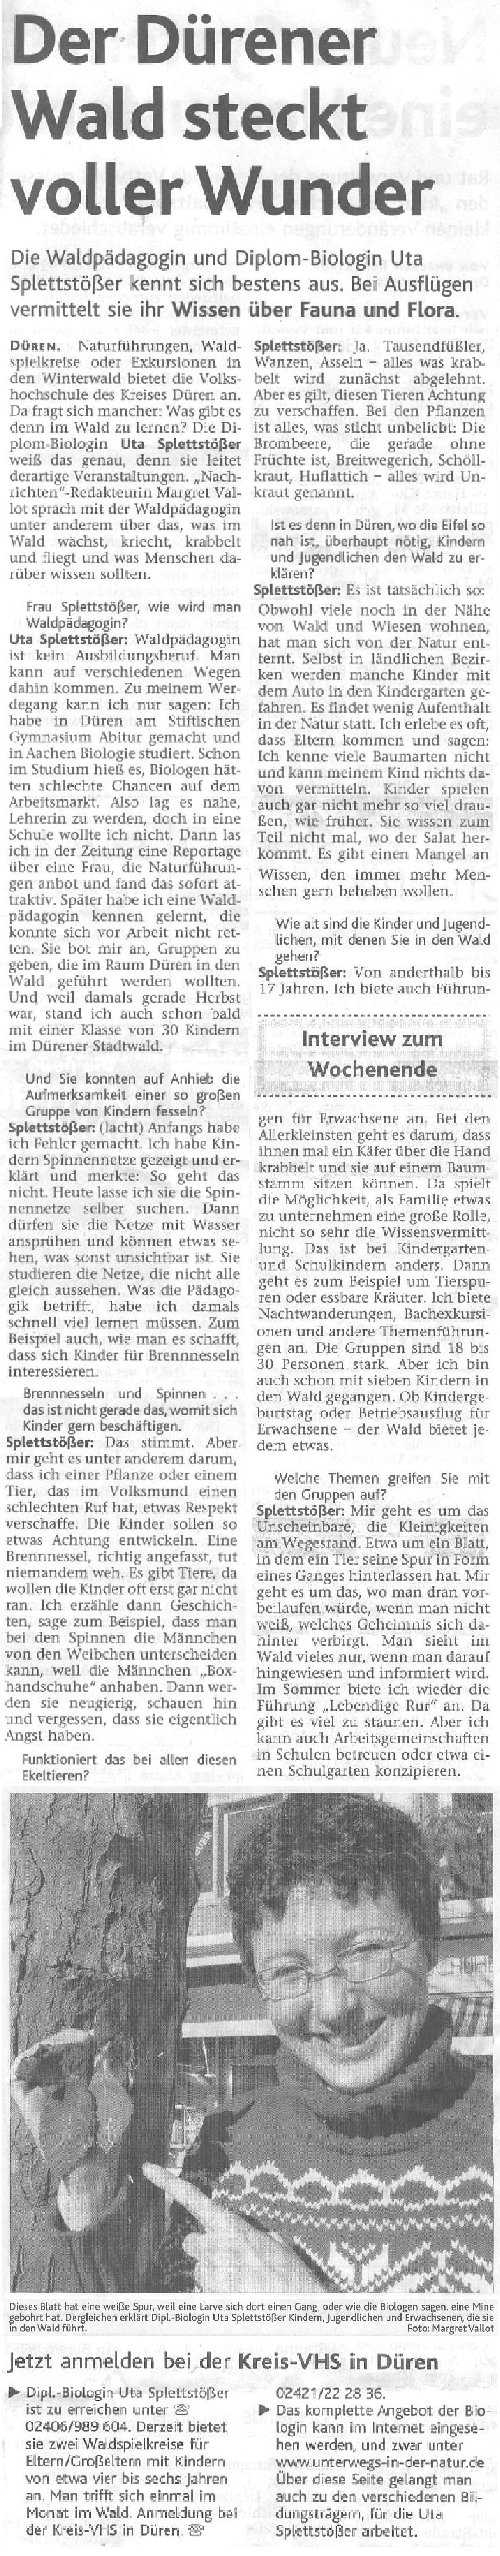 Aachener Nachrichten 16. Februar 2008